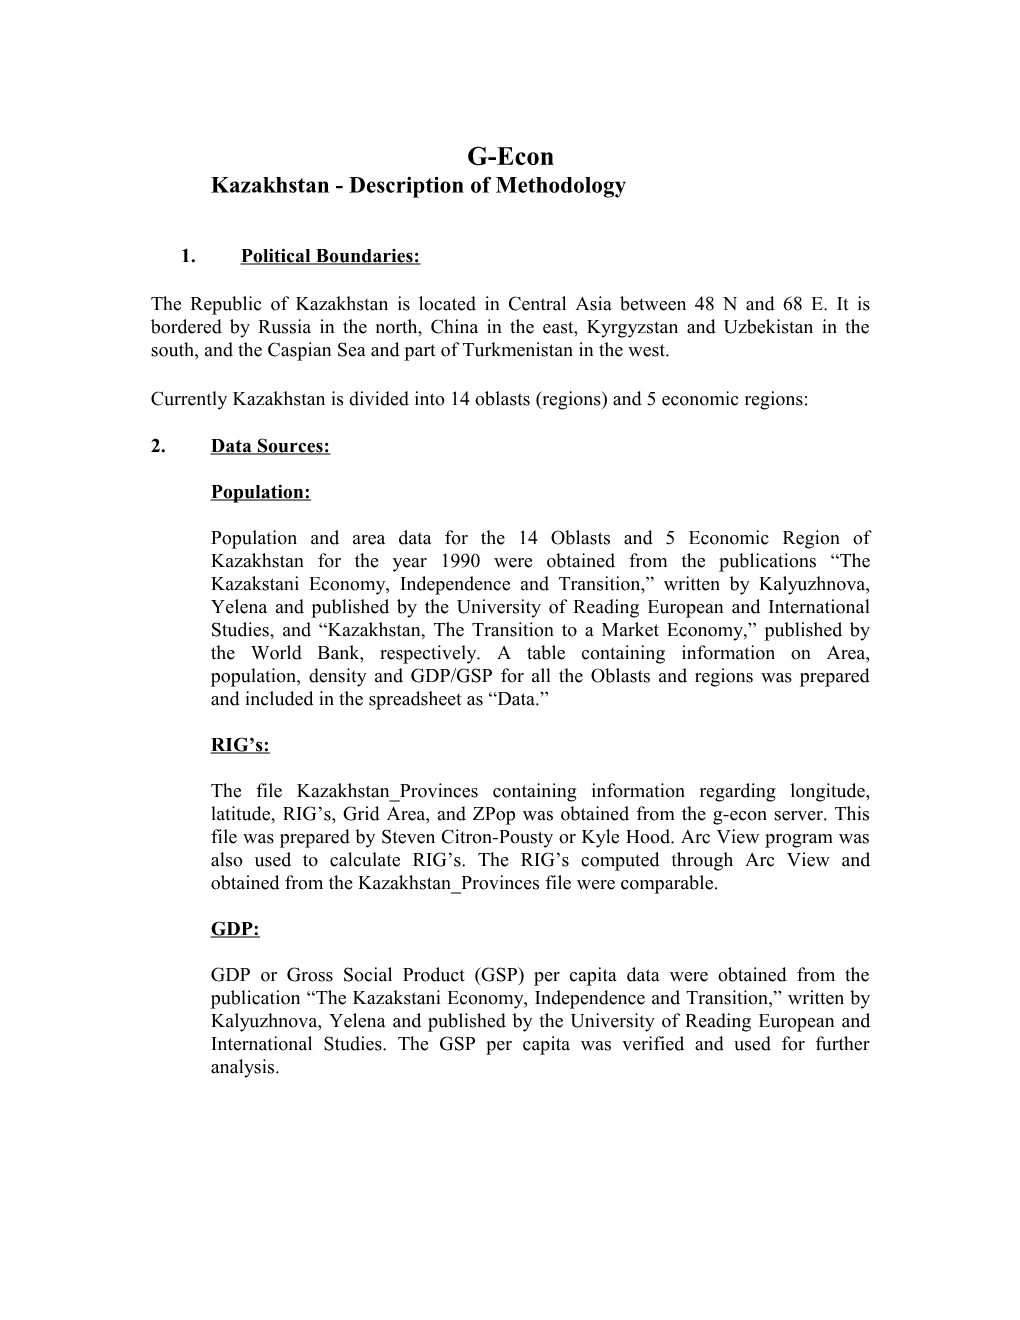 Kazakhstan- Description of Methodology